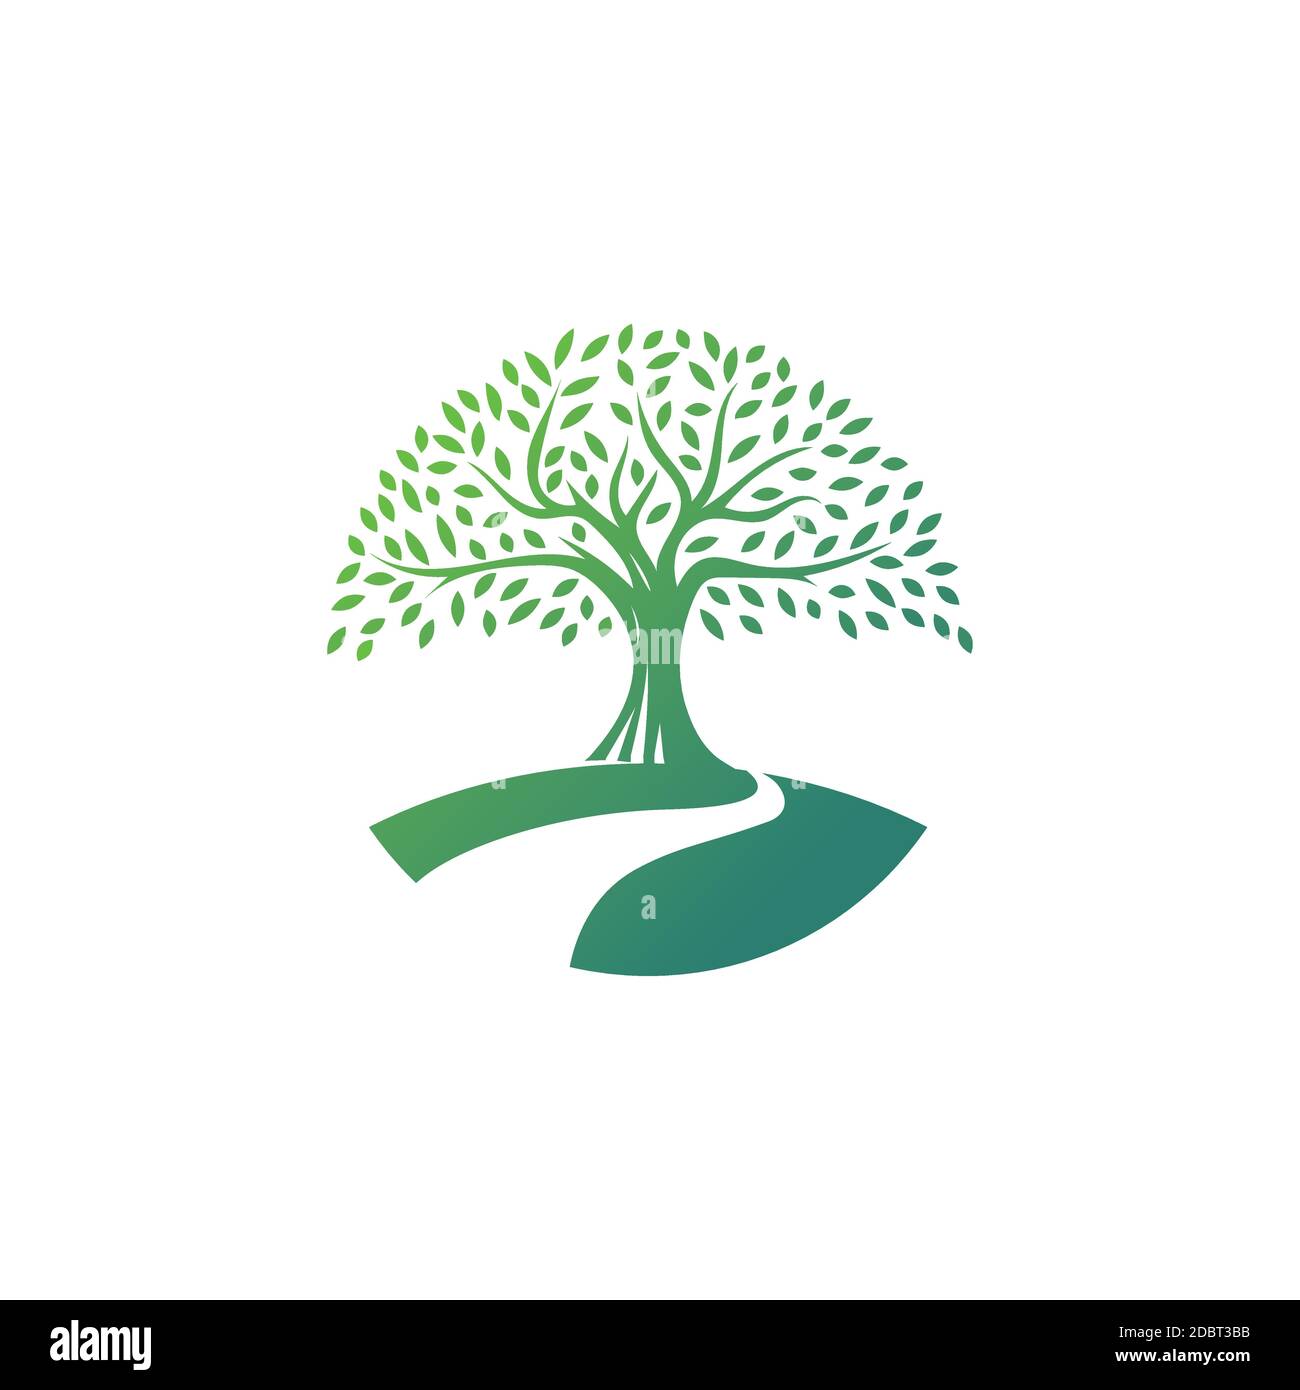 Baum Logo Design Vektor Vorlage.Fluss Baum Illustration Stock Vektor